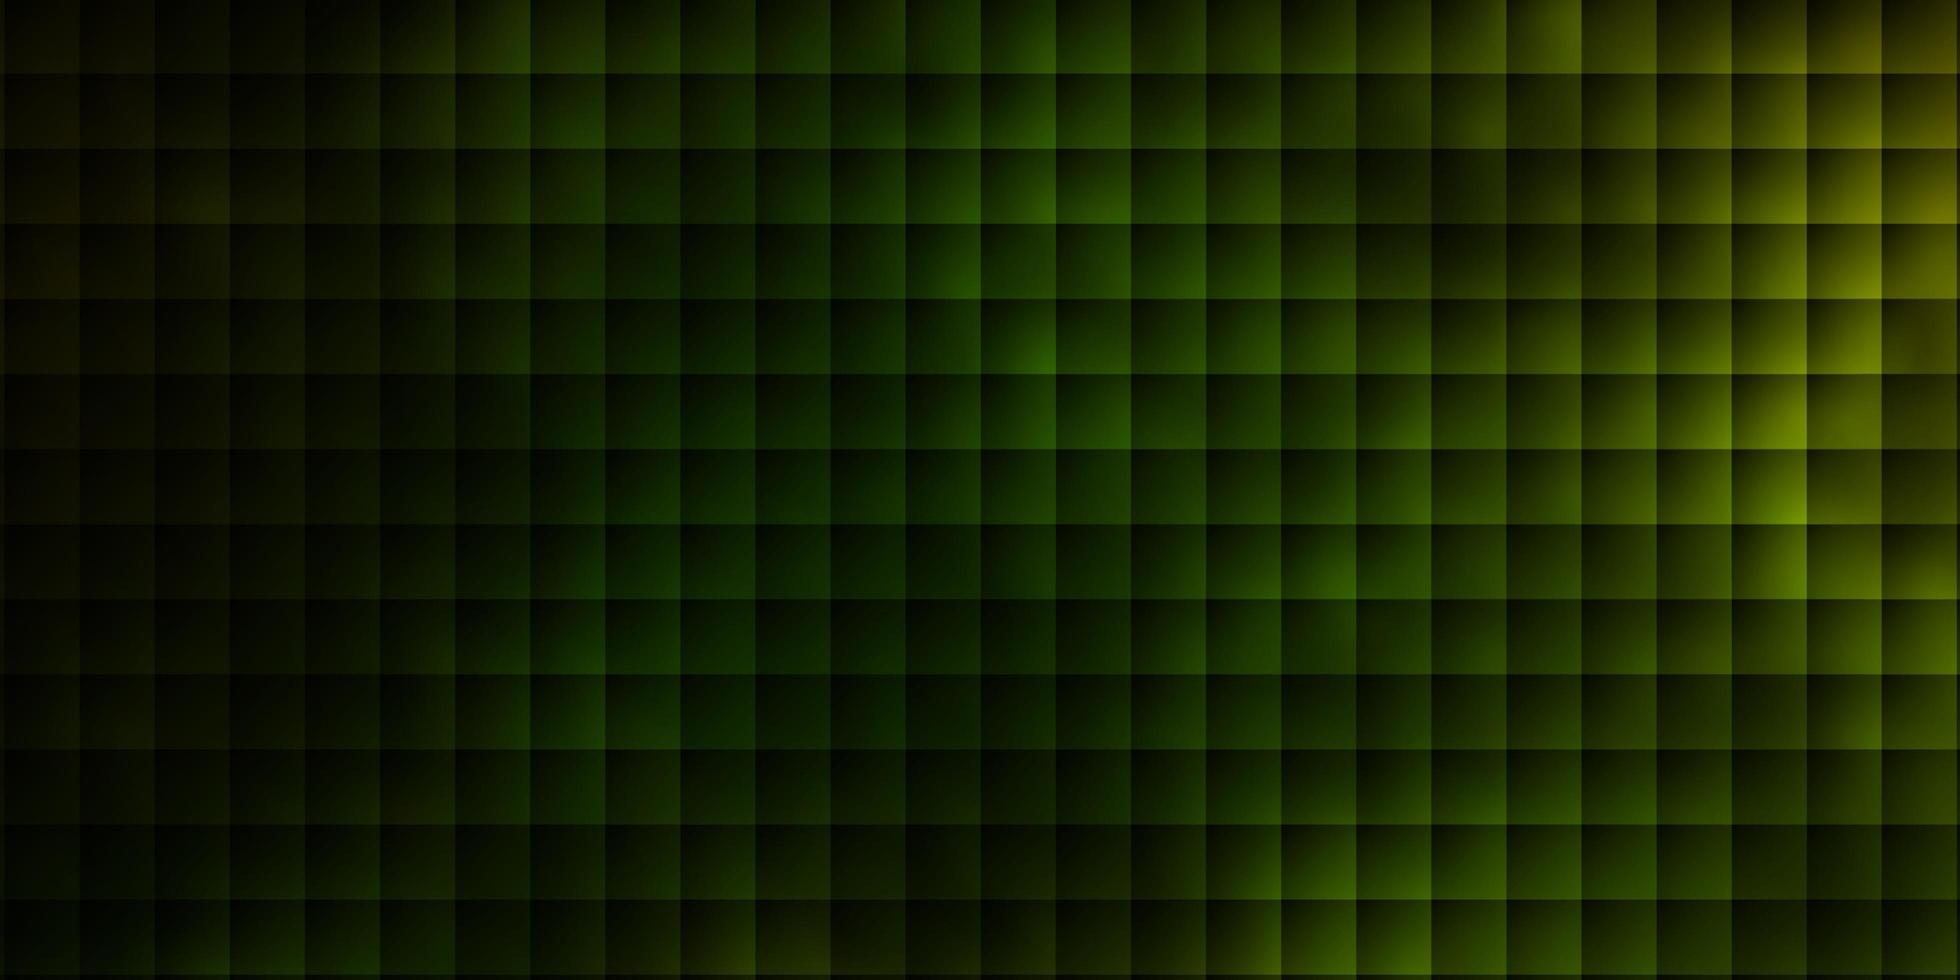 layout de vetor verde escuro com linhas, retângulos.